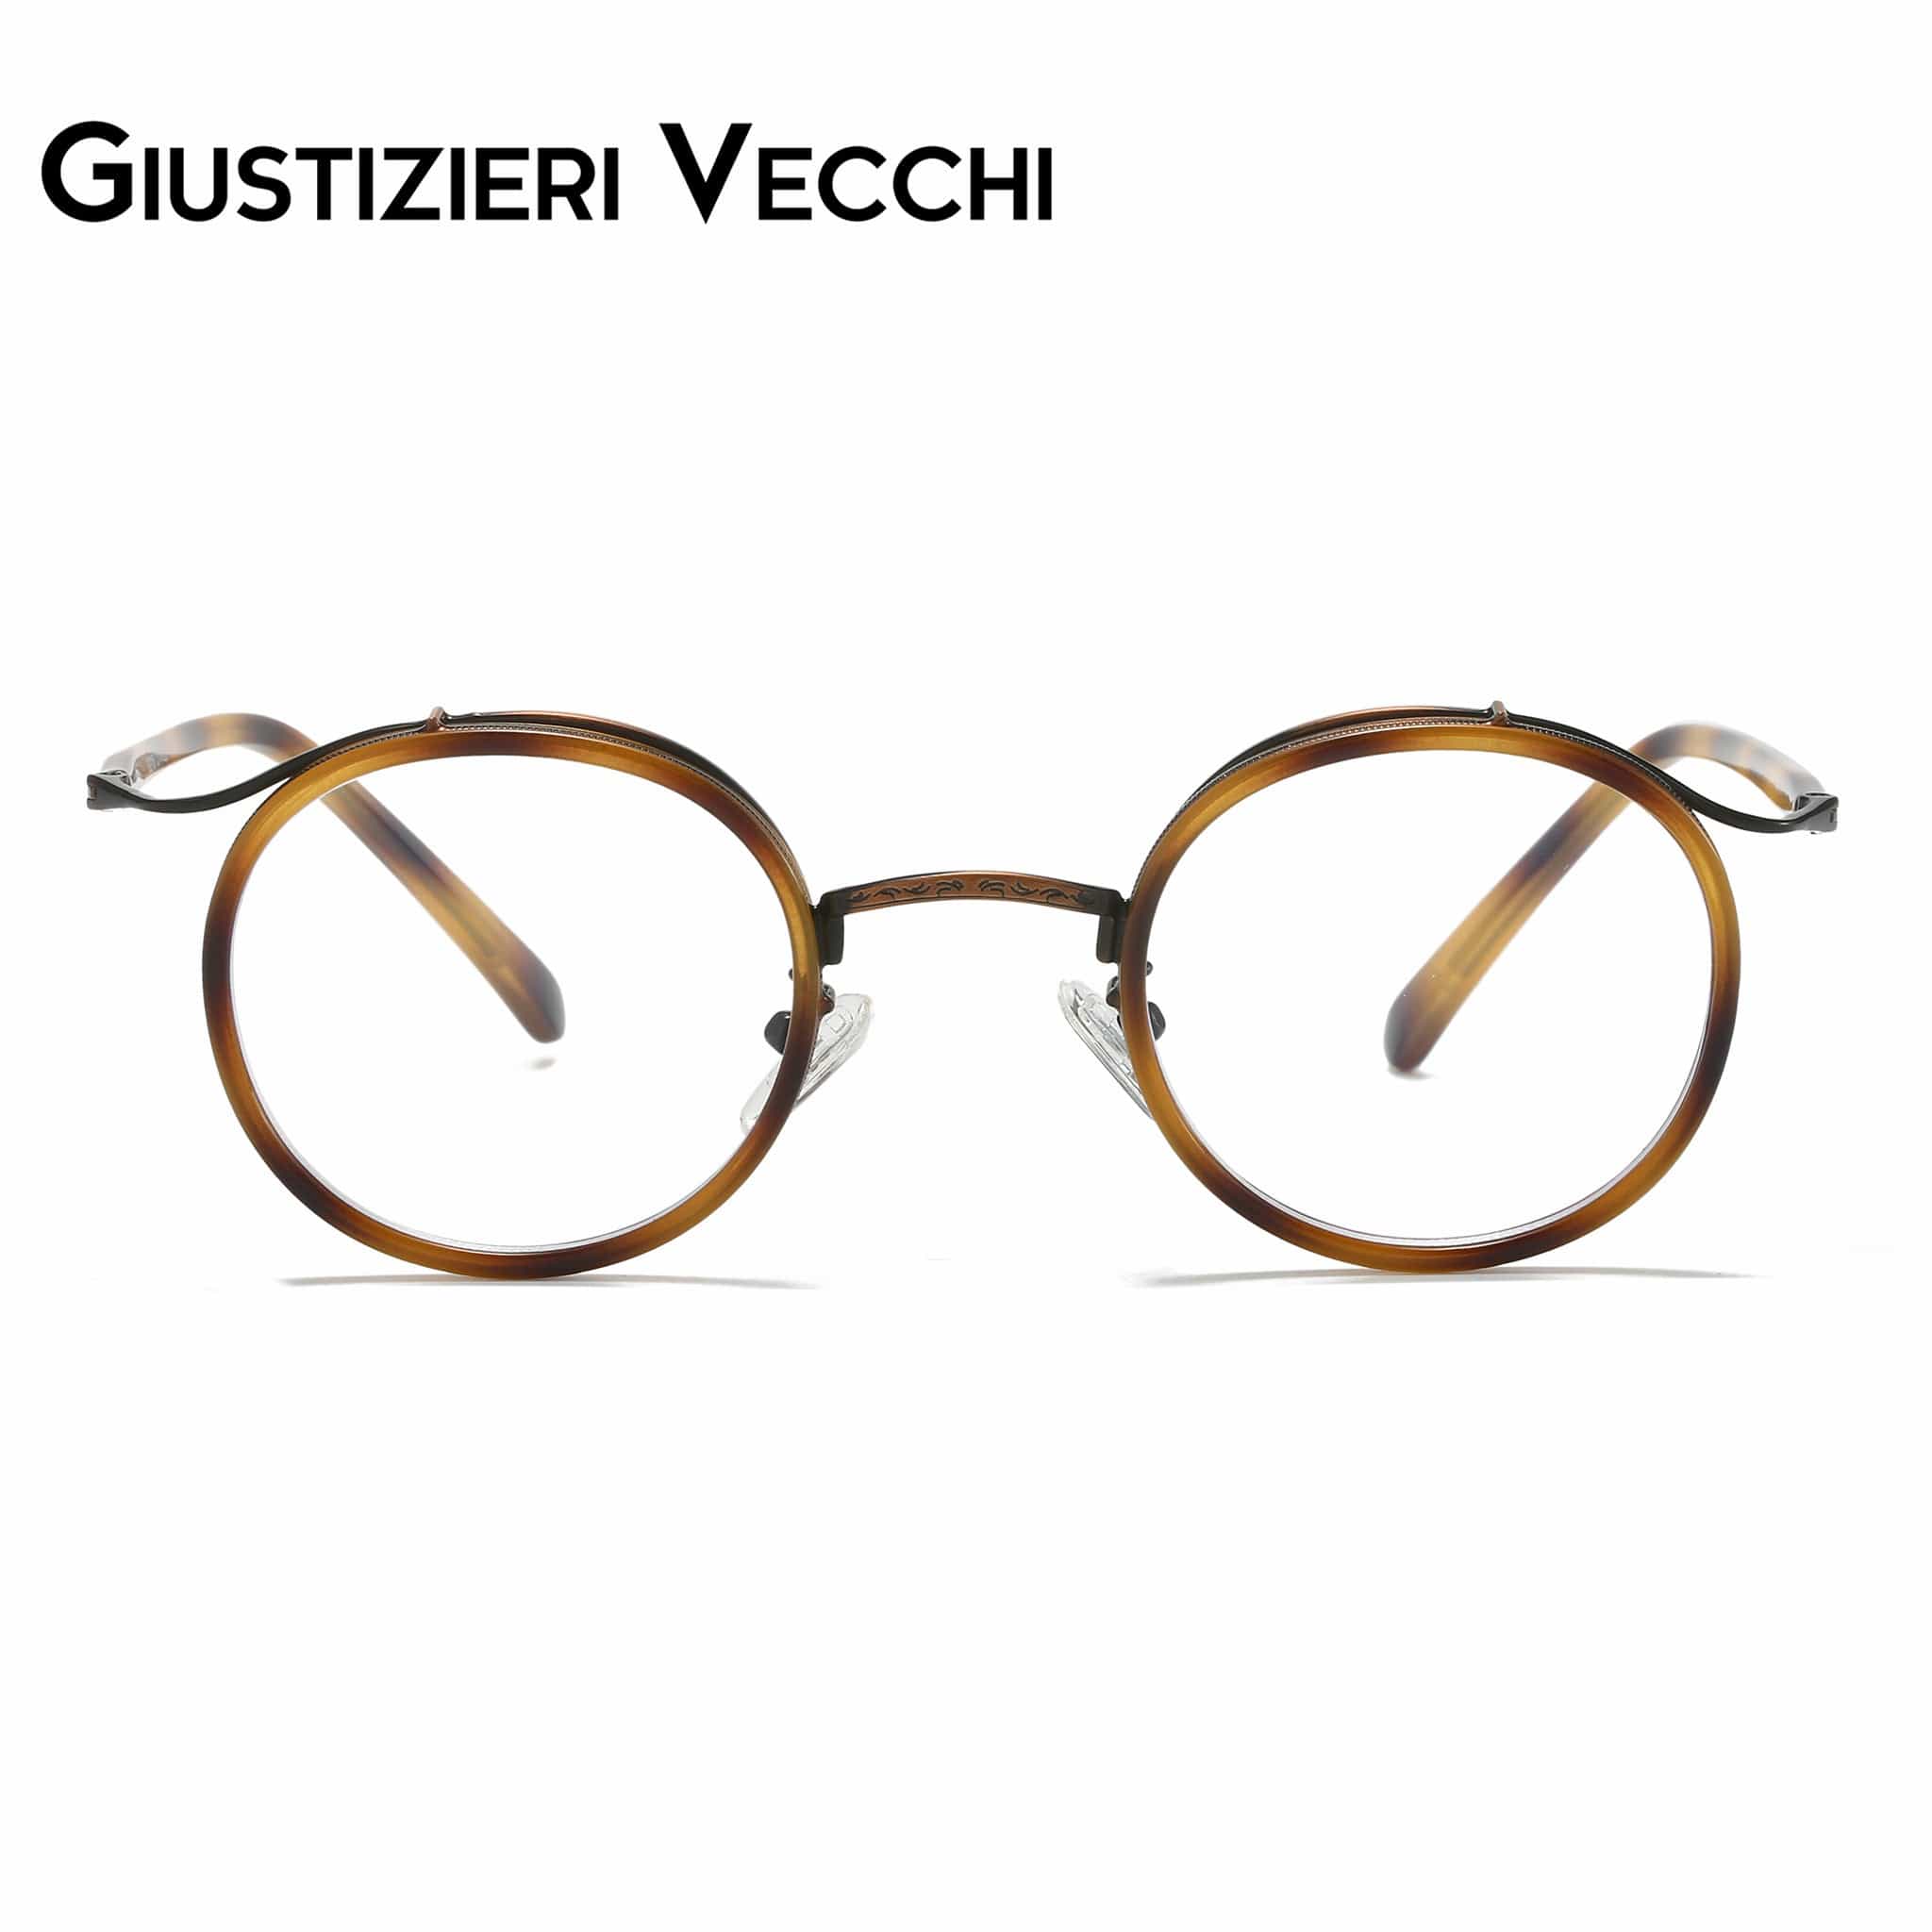 GIUSTIZIERI VECCHI Eyeglasses Small / Brown Tortoise Grapevine Uno